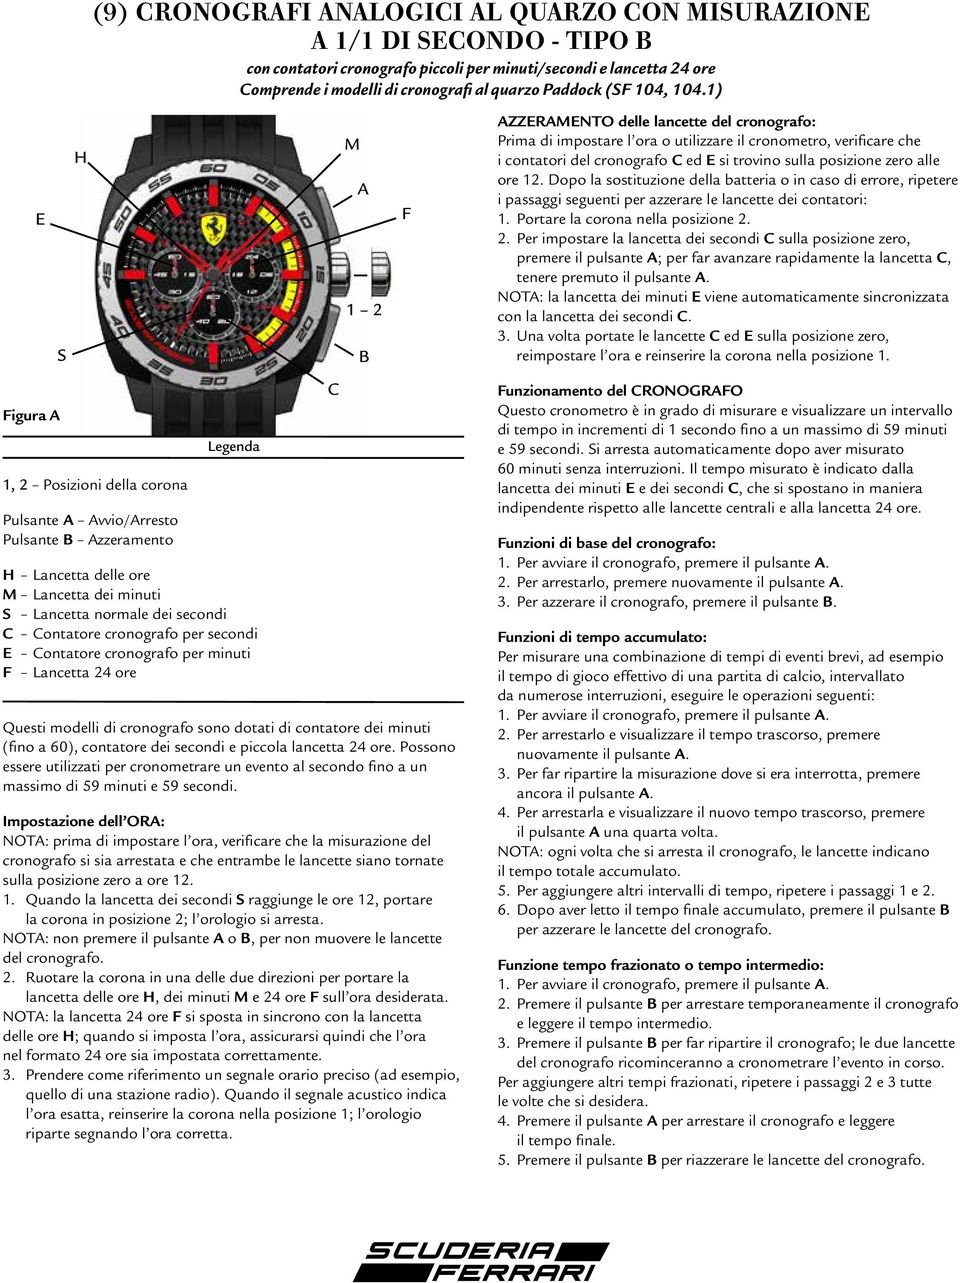 per minuti F Lancetta 24 ore Questi modelli di cronografo sono dotati di contatore dei minuti (fino a 60), contatore dei secondi e piccola lancetta 24 ore.